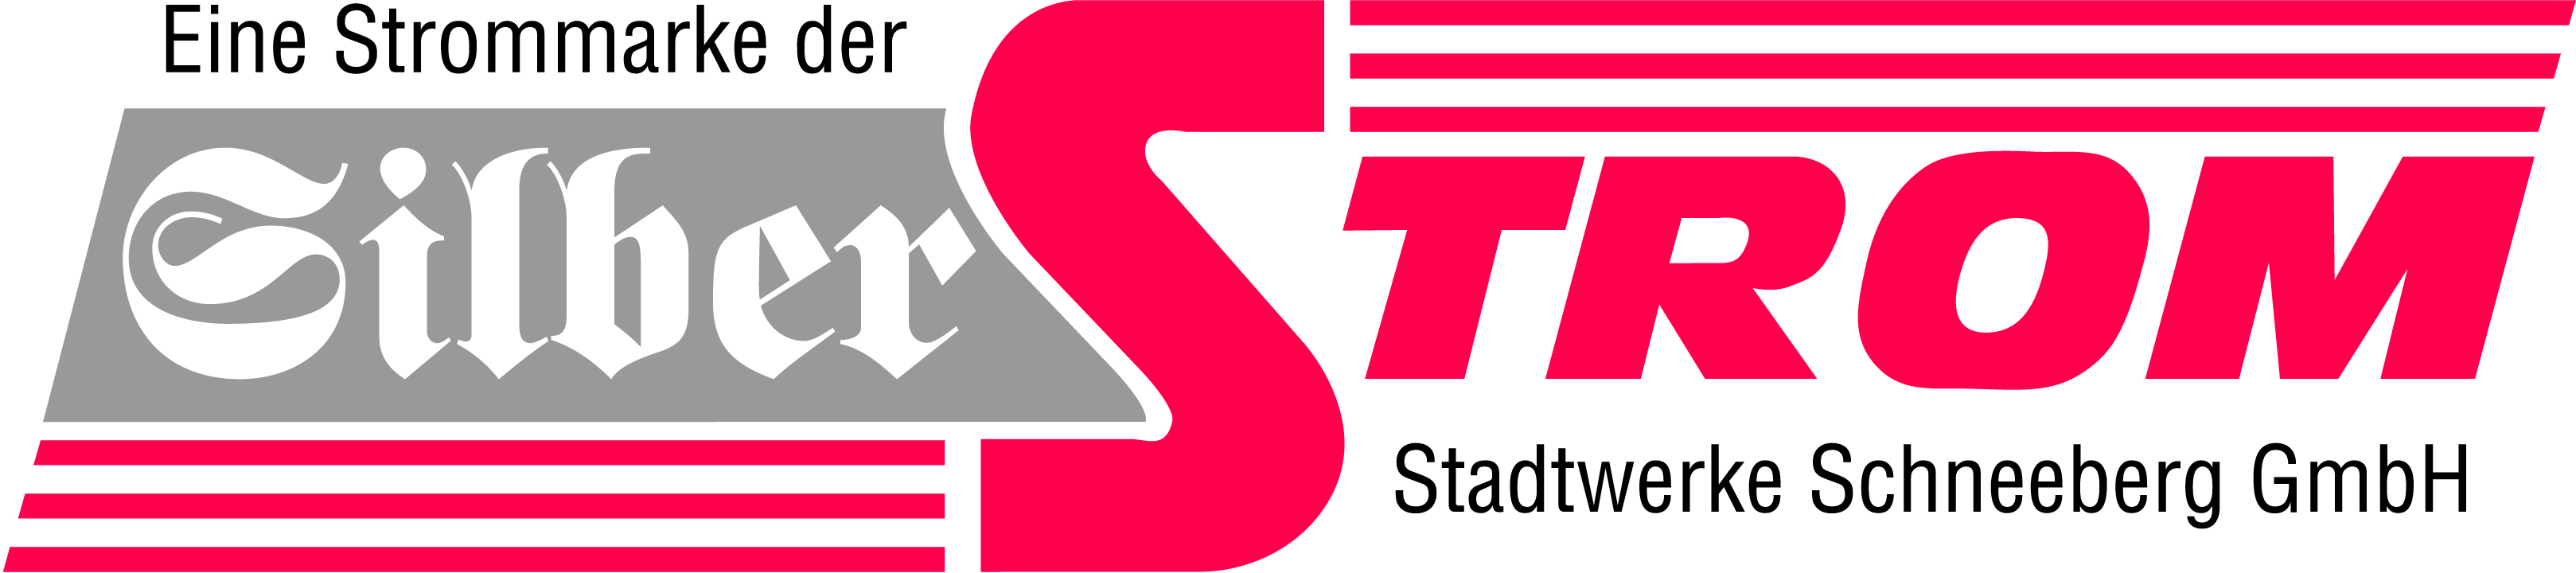 Logo_Silberstrom_STW